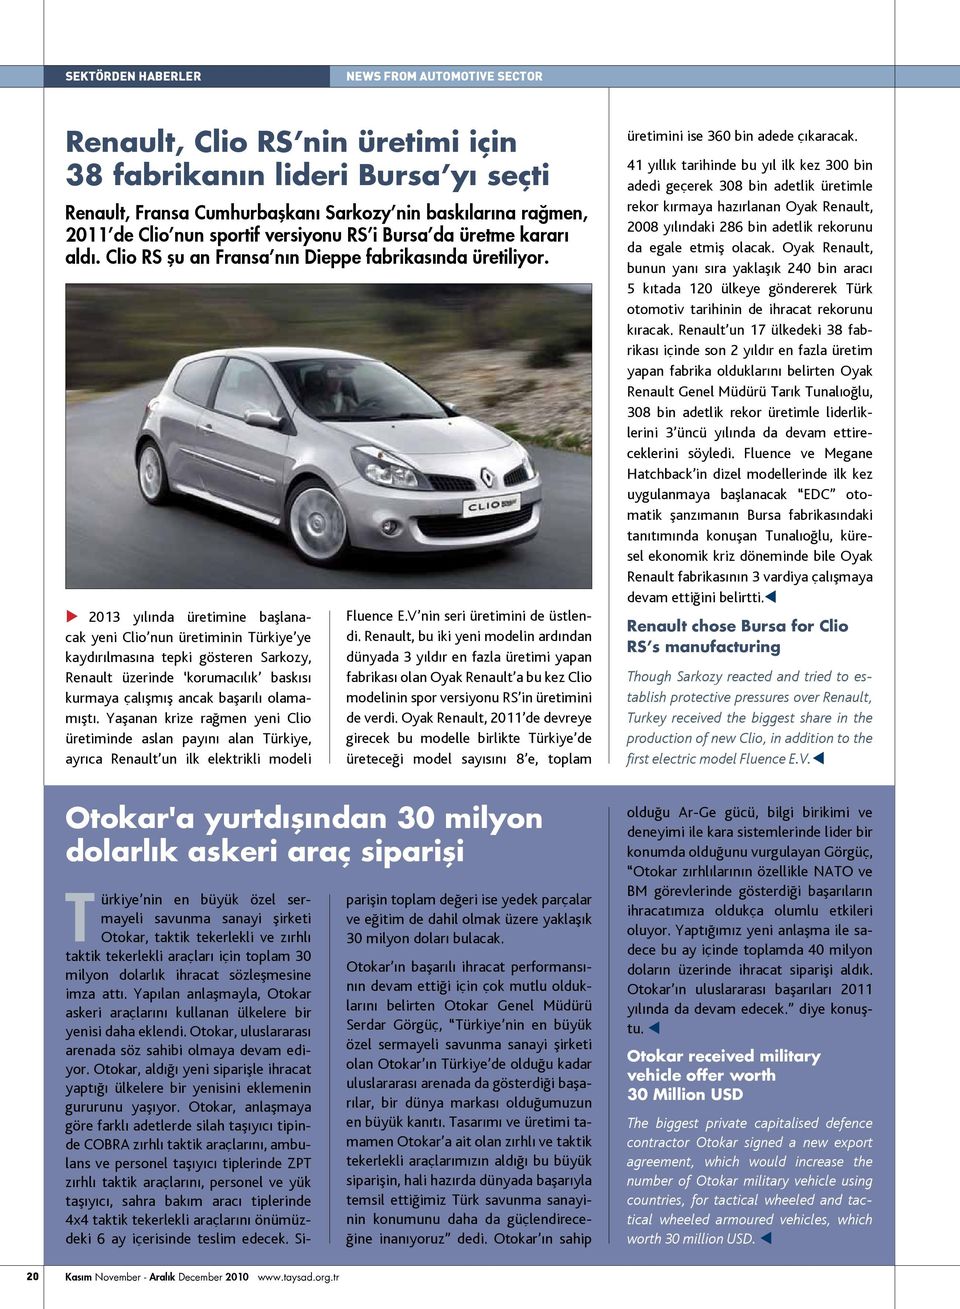 u 2013 yılında üretimine başlanacak yeni Clio nun üretiminin Türkiye ye kaydırılmasına tepki gösteren Sarkozy, Renault üzerinde korumacılık baskısı kurmaya çalışmış ancak başarılı olamamıştı.